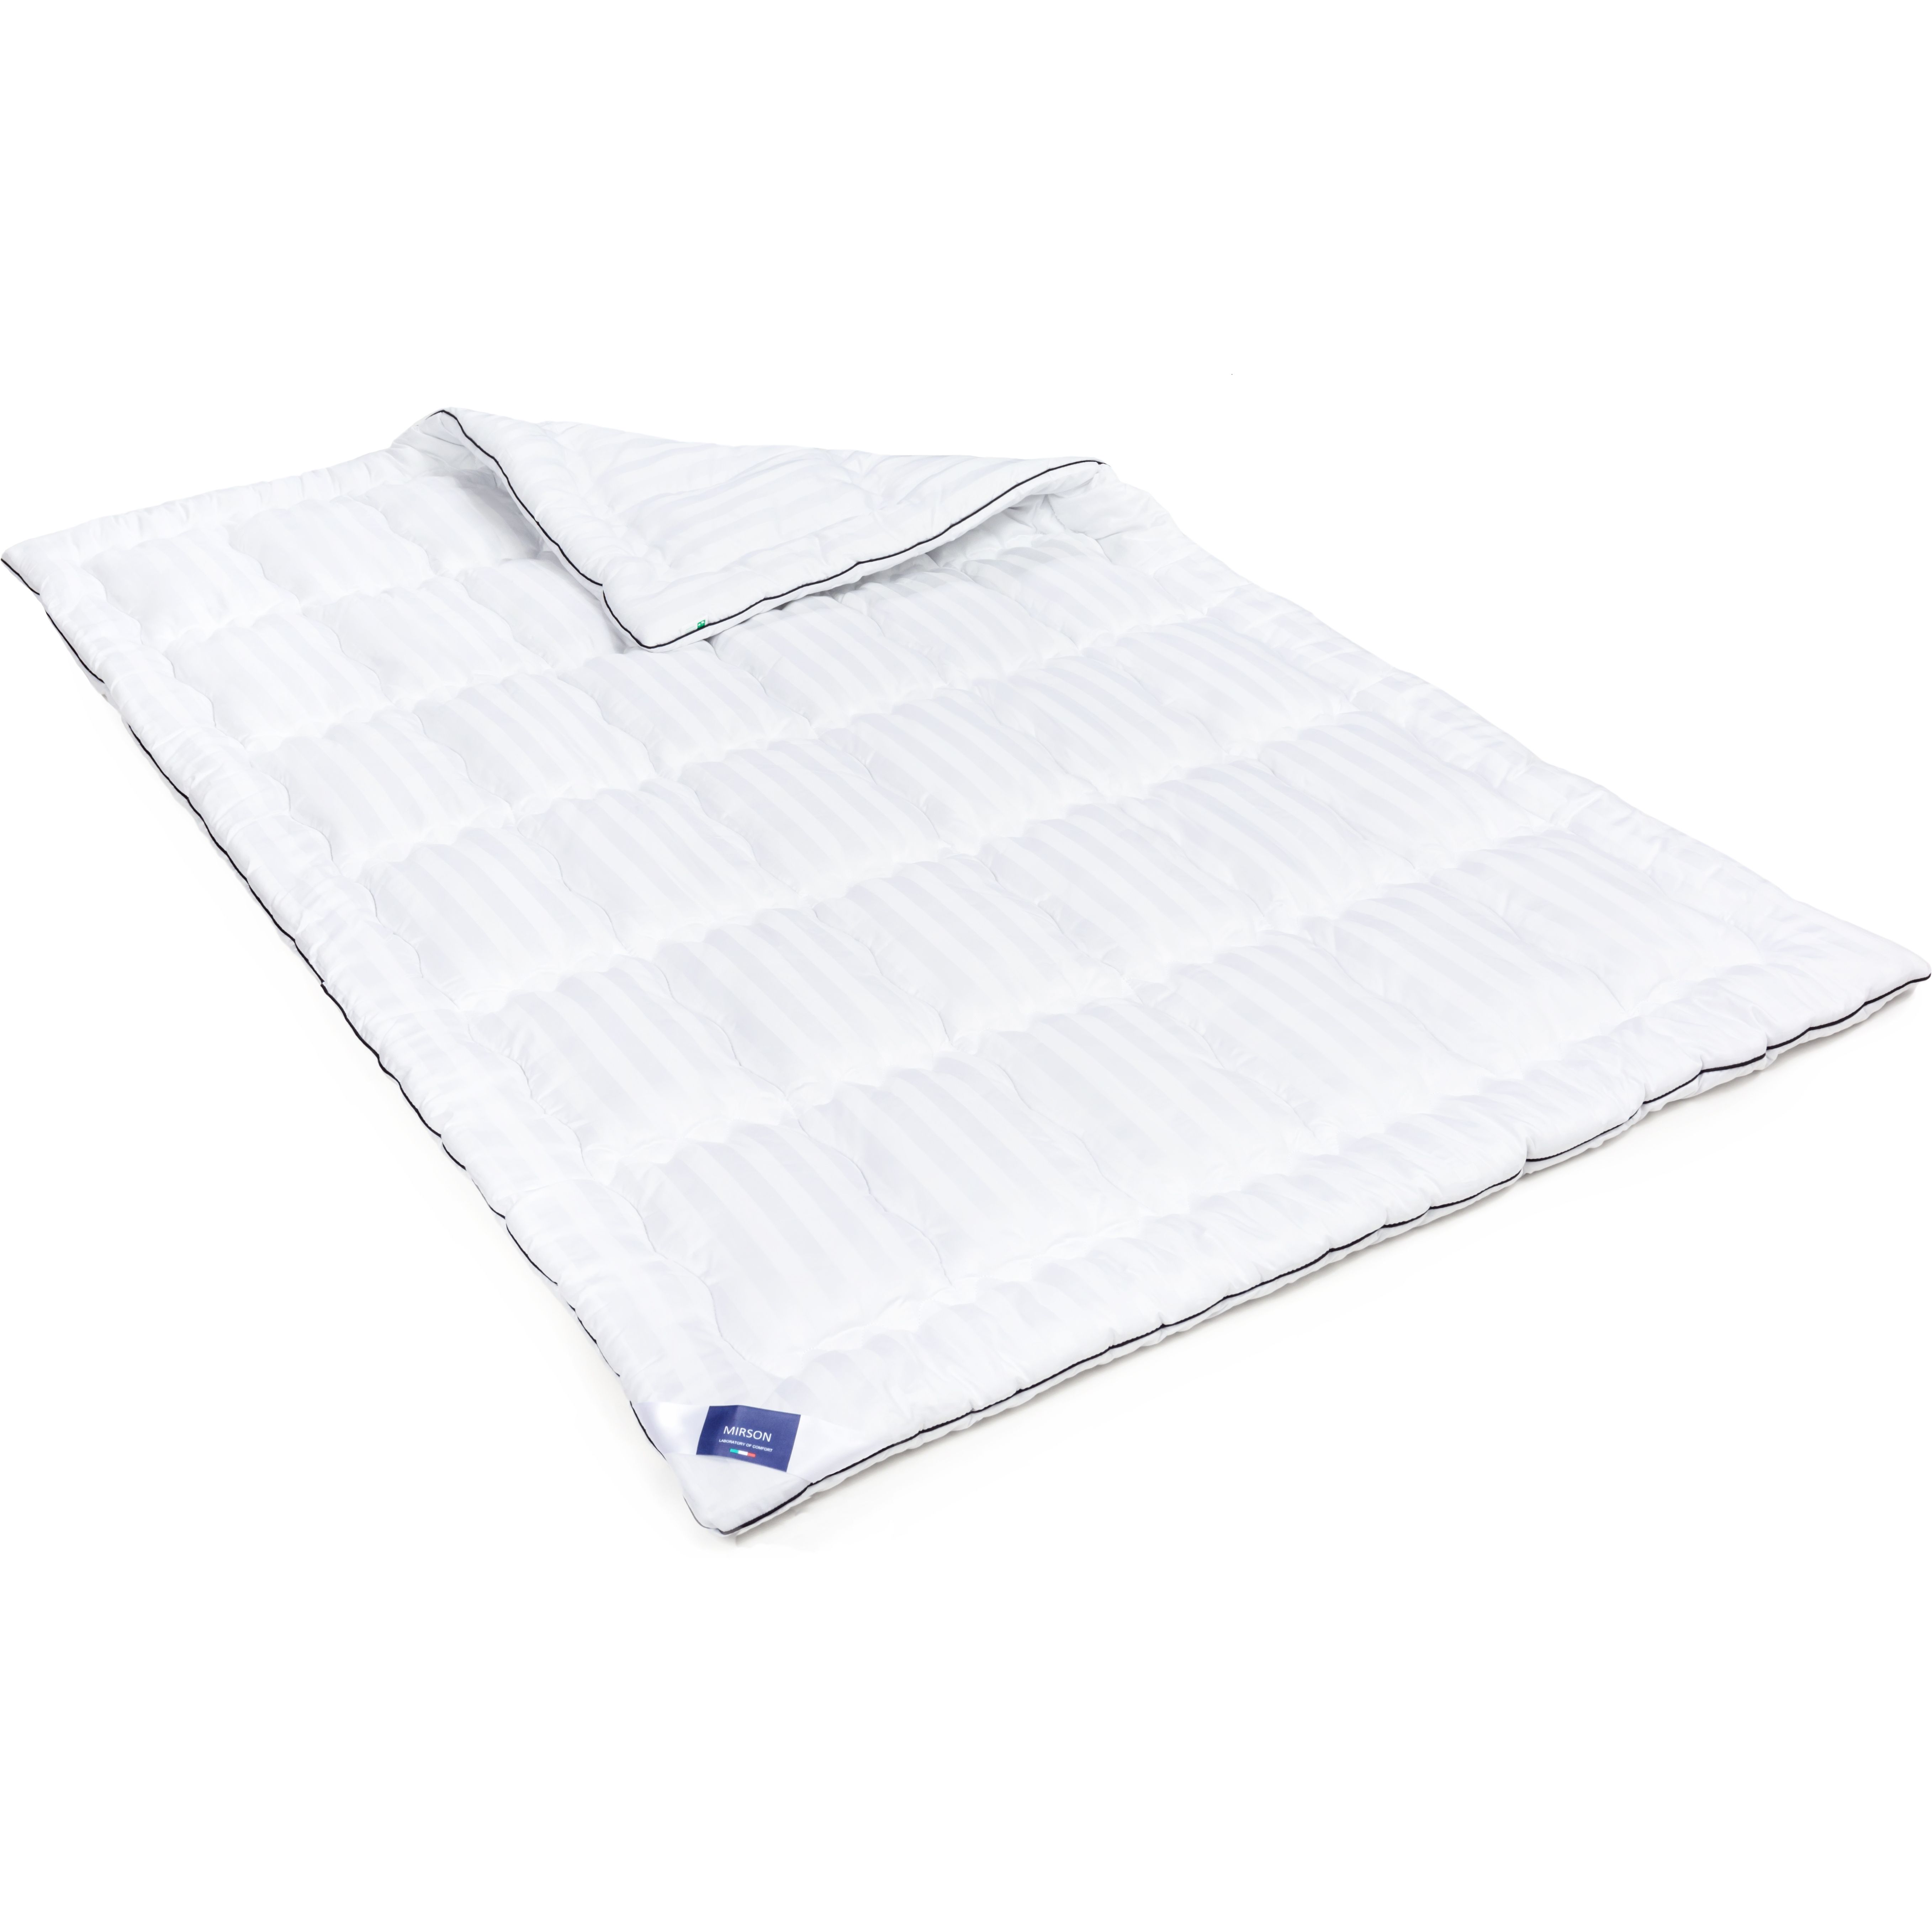 Одеяло антиаллергенное MirSon Royal Pearl Hand Made EcoSilk №0556, зимнее, 220x240 см, белое - фото 1